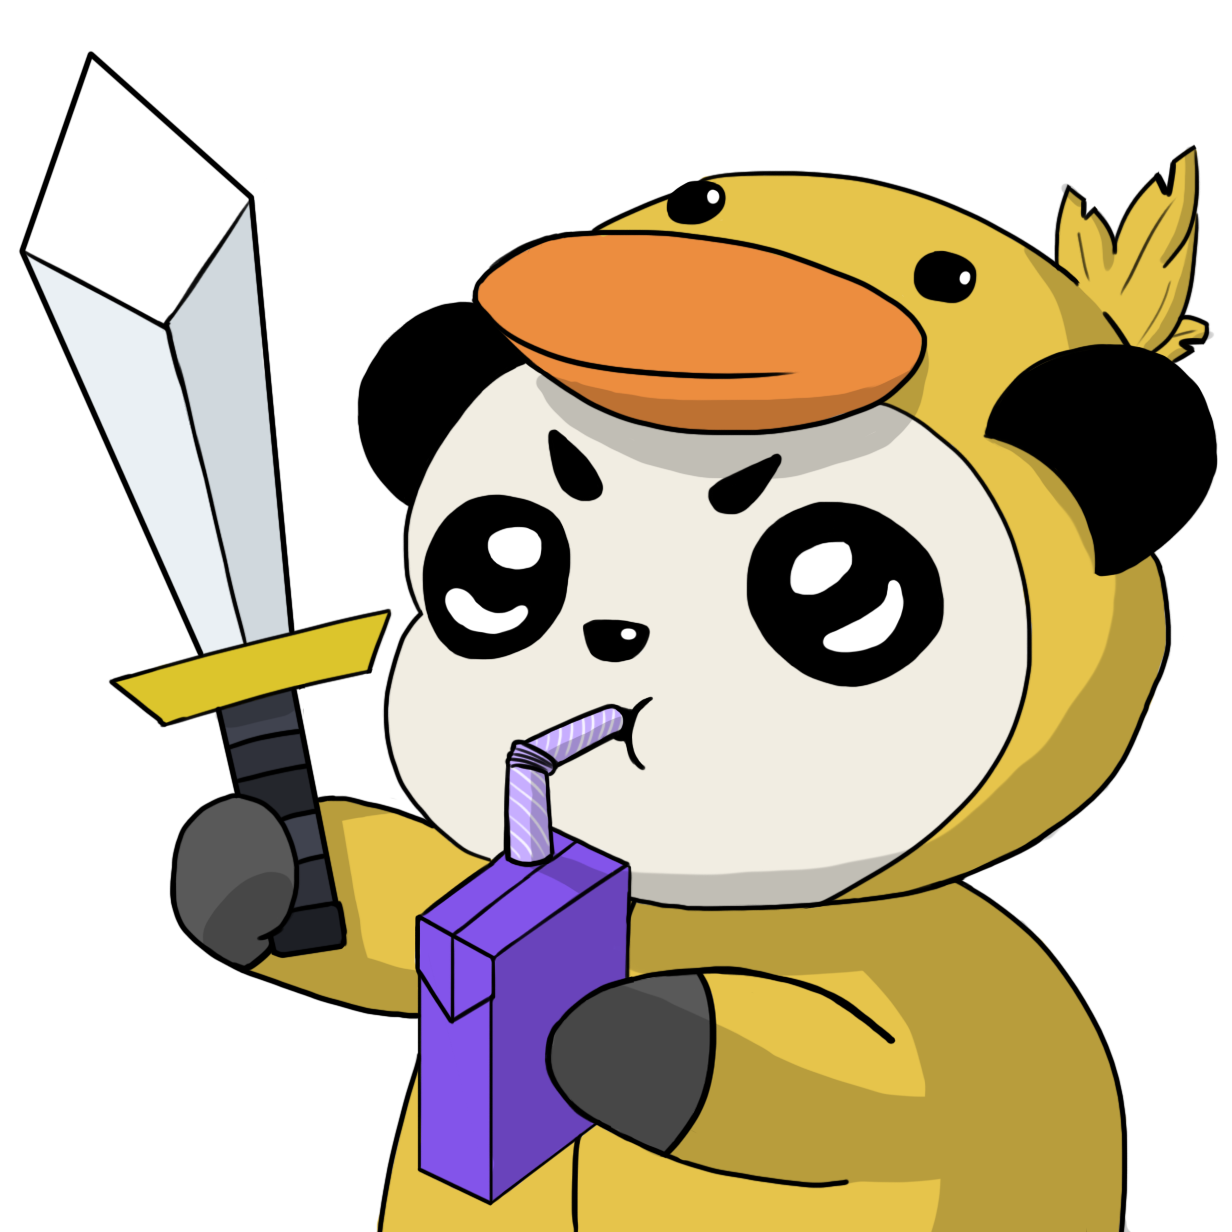 Giant Emoji Panda Red Discord Free HQ Image PNG Image